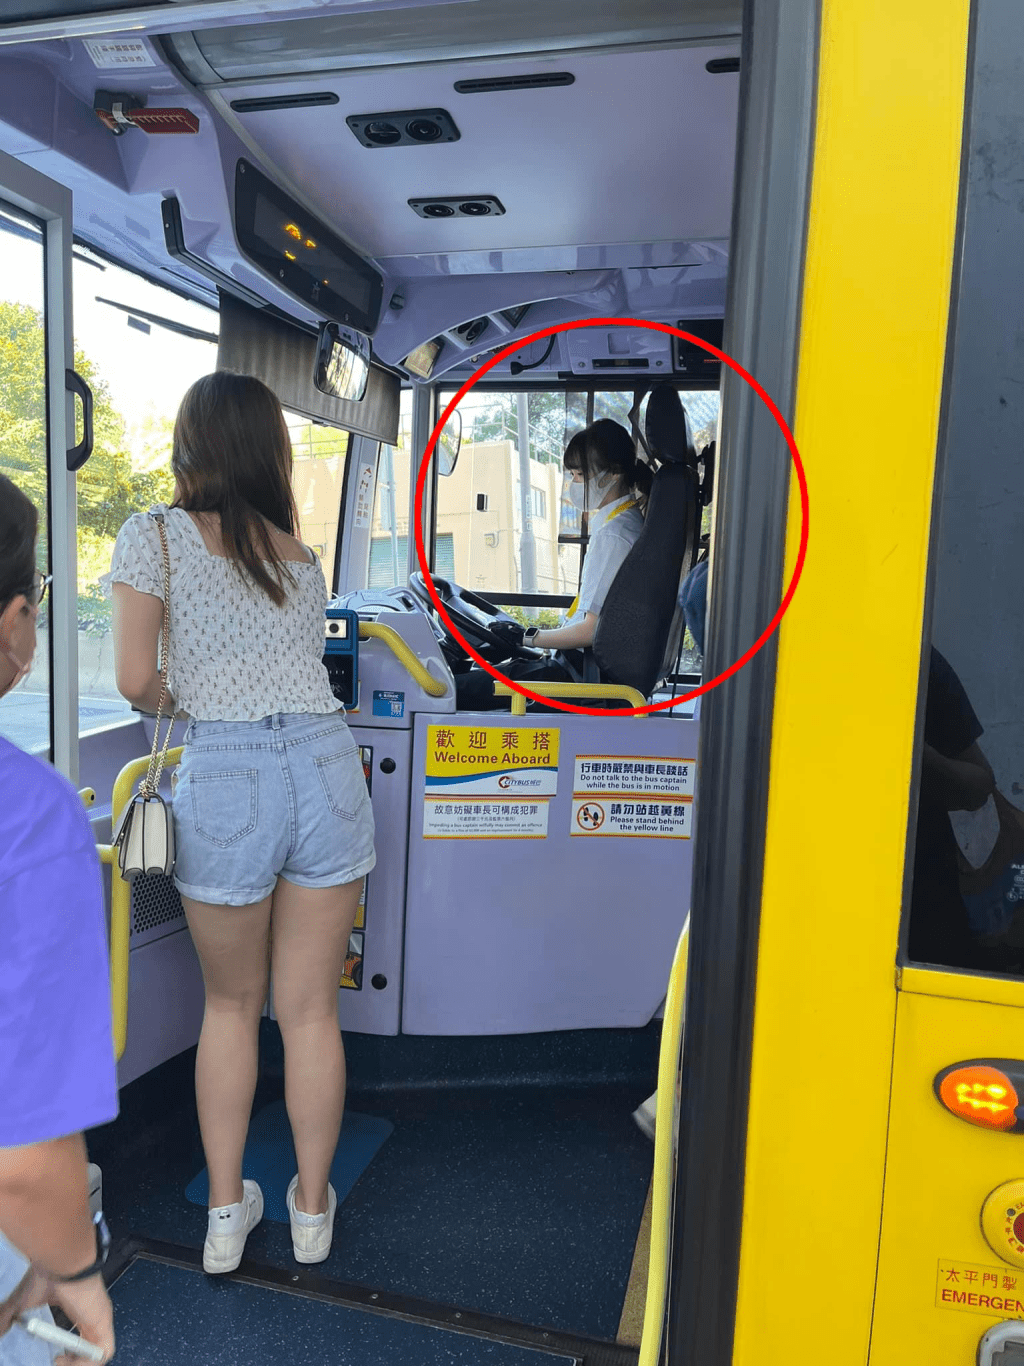 帖文附有一張充滿仙氣的女巴士司機的側面照，引發網民熱議。